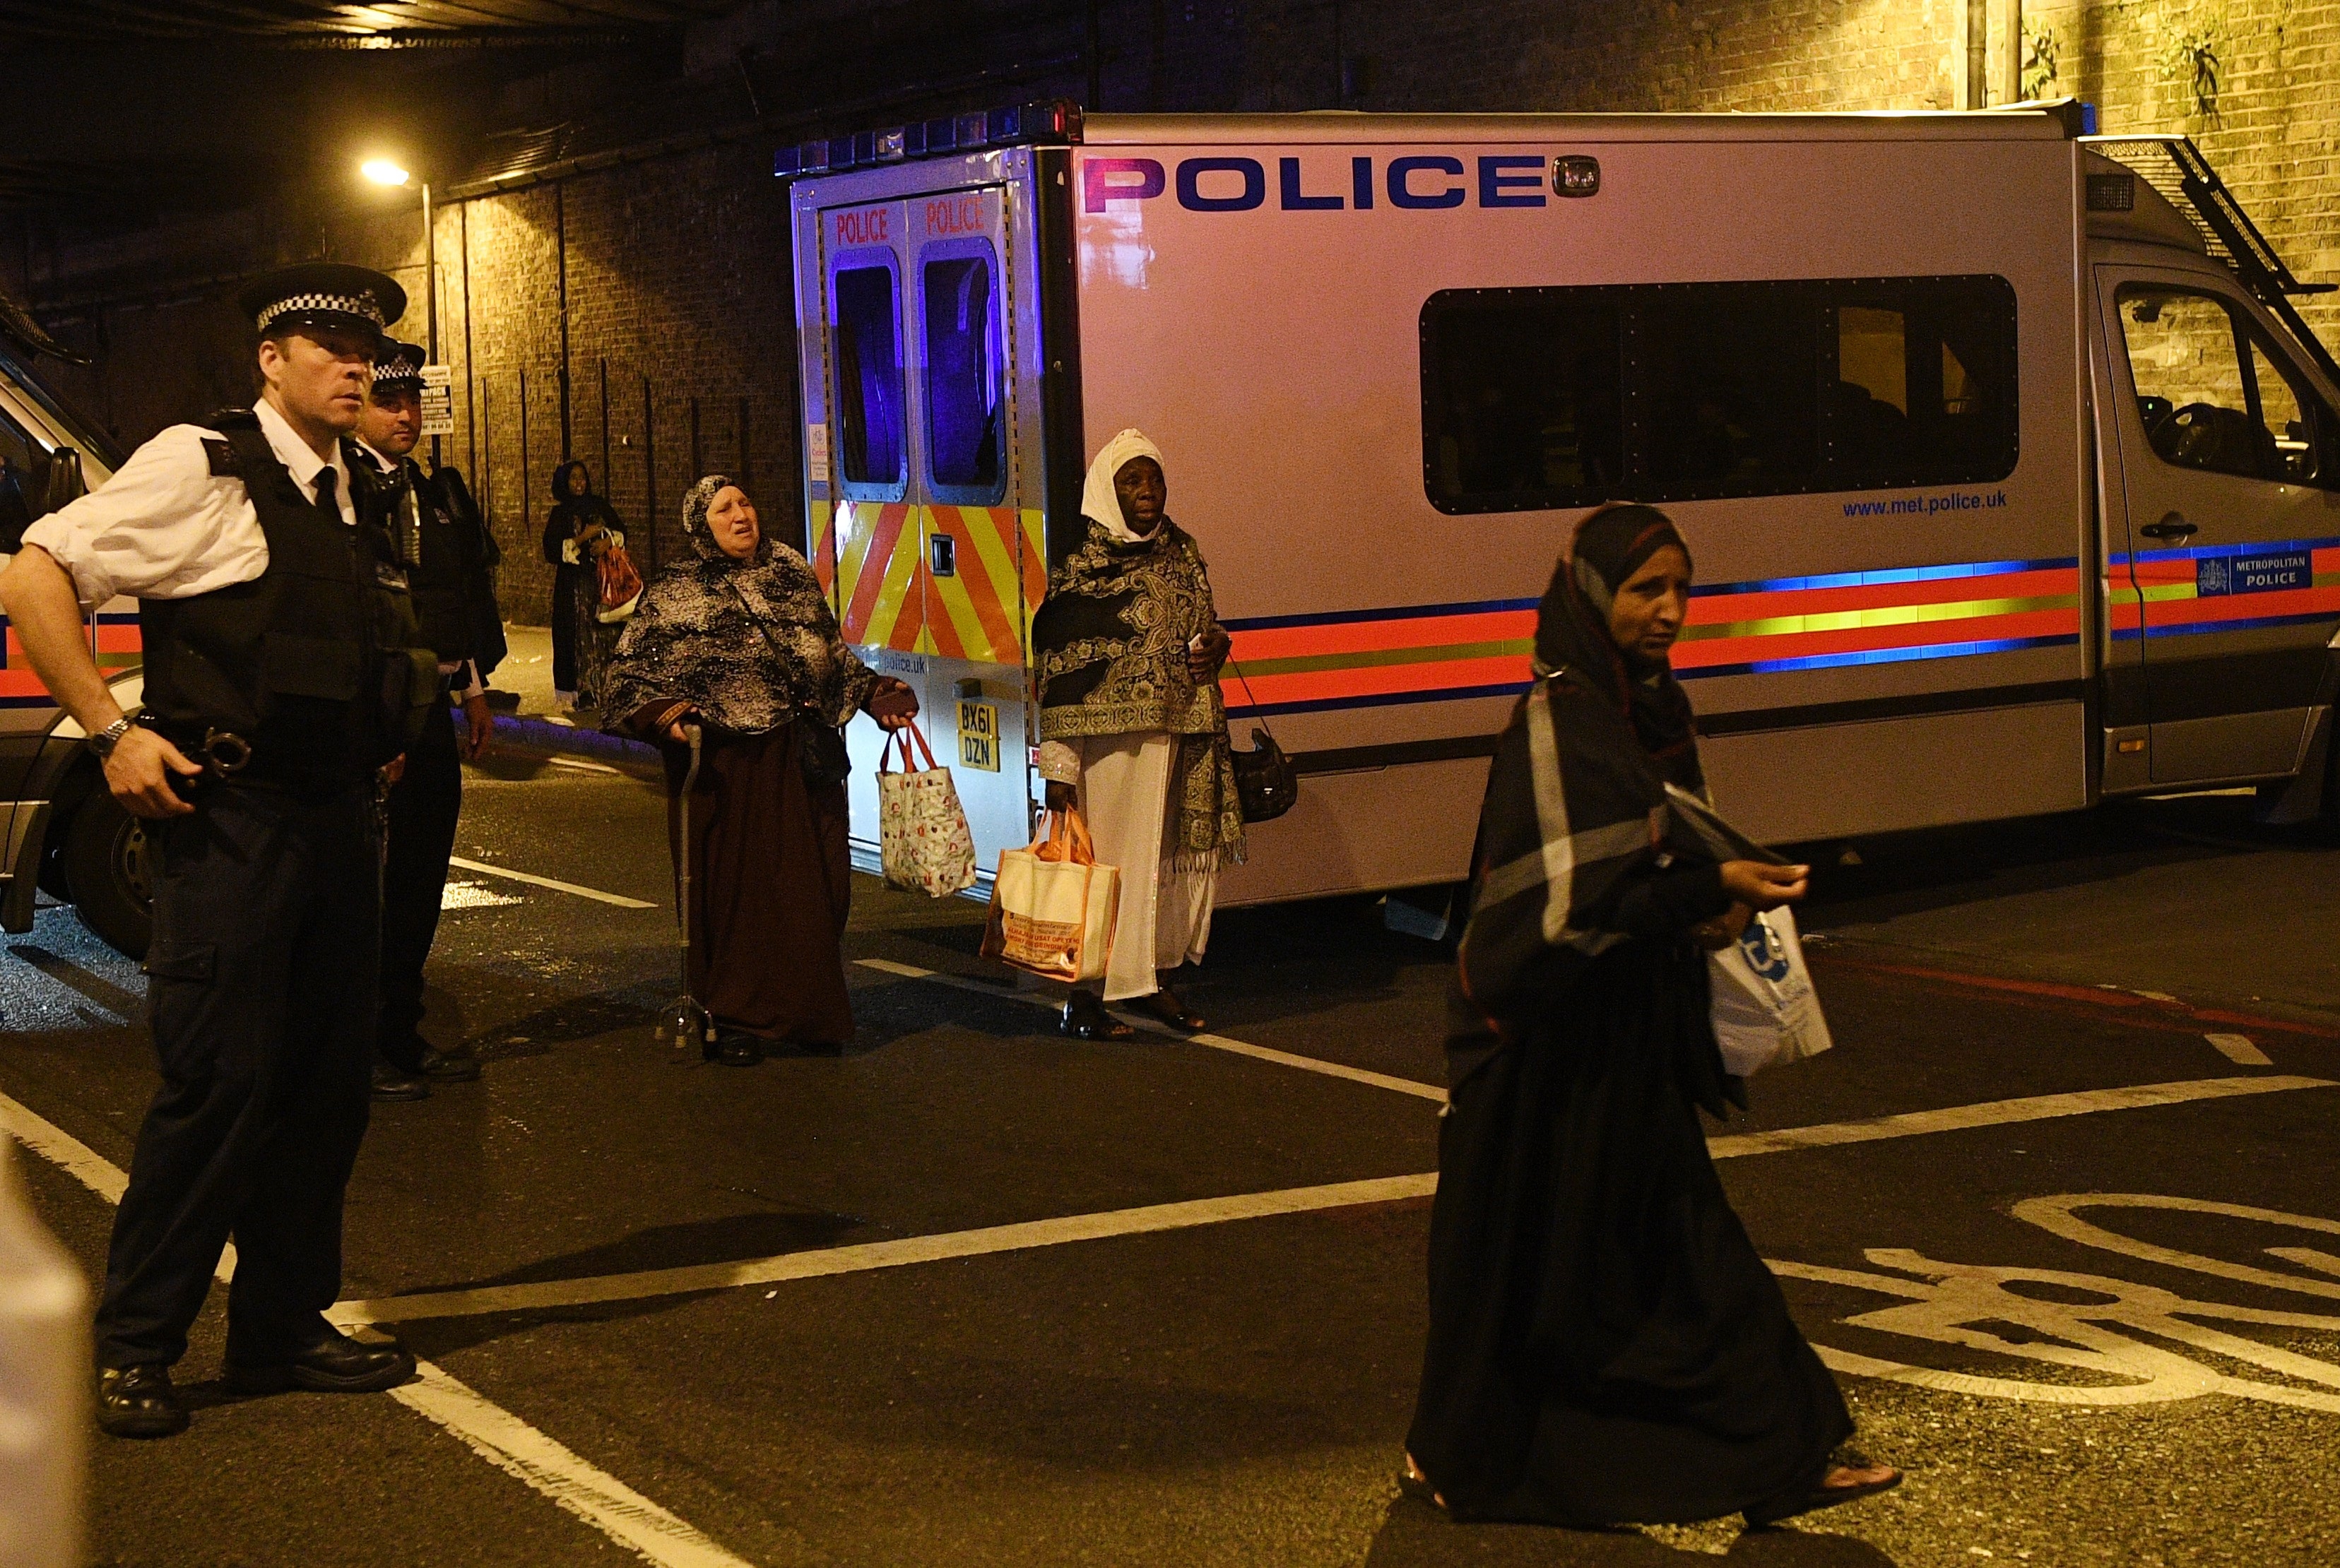 Ван връхлетя върху пешеходци в североизточната част на Лондон близо до една от най-големите джамии в британската столица във "Финсбъри парк". Инцидентът стана в района на улица „Севън систърс роуд”. Пострадали са 11 души, по последна информация има една жертва. Мястото и времето не са случайни, а медиите на Острова говорят за атентат на отмъщението - отмъщение за атаката от 4 юни на "Лондон бридж".